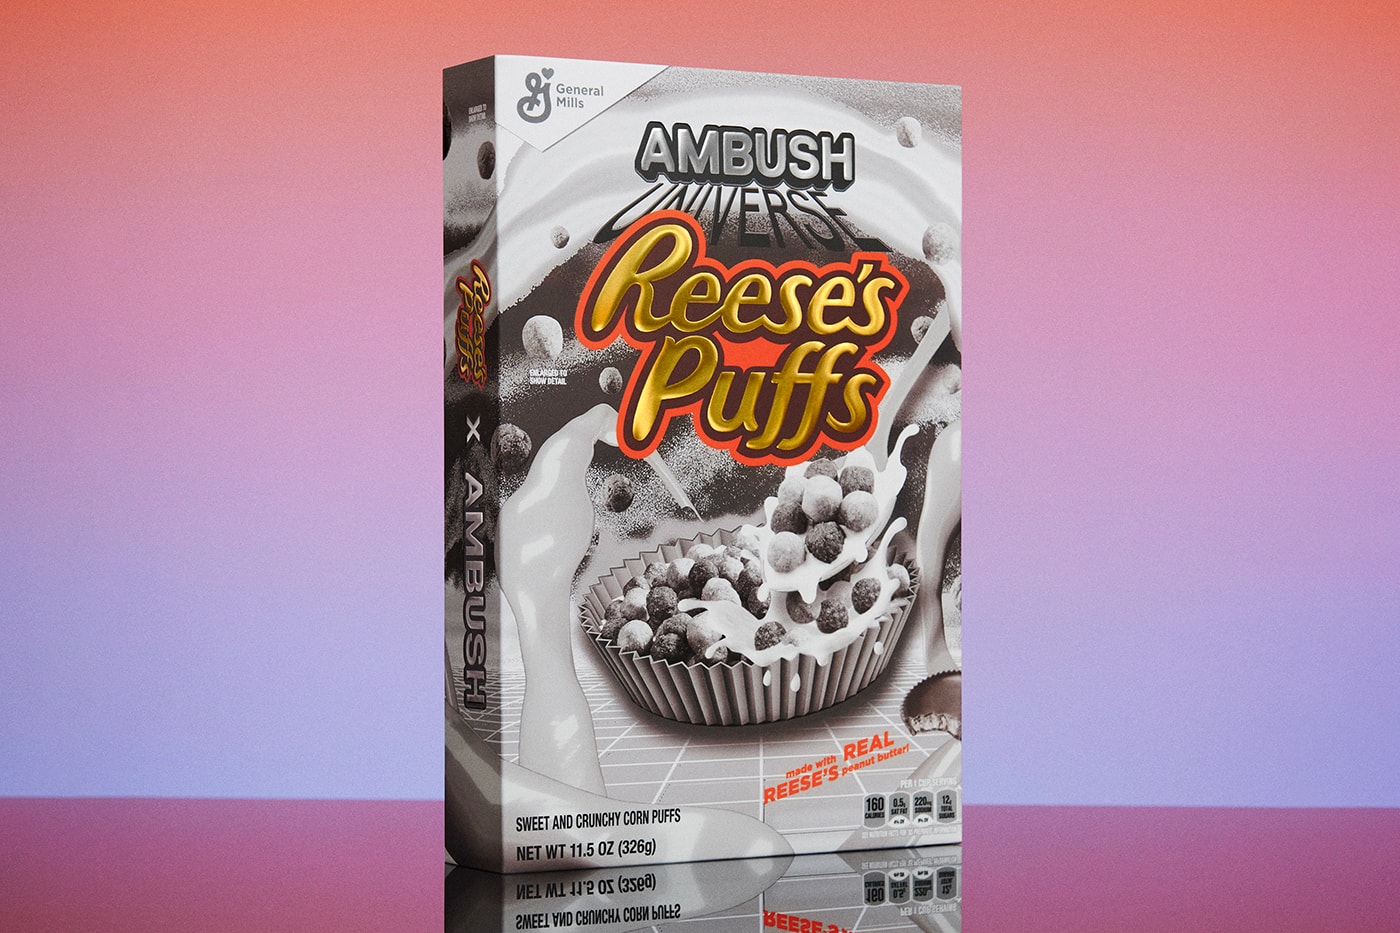 米国民的シリアル リージーズ・パフズxアンブッシュ®による限定版ボックスがついに発売 AMBUSH Reese's Puffs Breakfastverse Chrome Puff Cereal Box Release Info Date Buy Price Yoon Ahn General Mills